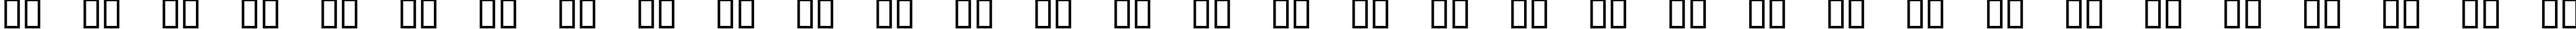 Пример написания русского алфавита шрифтом SirClive